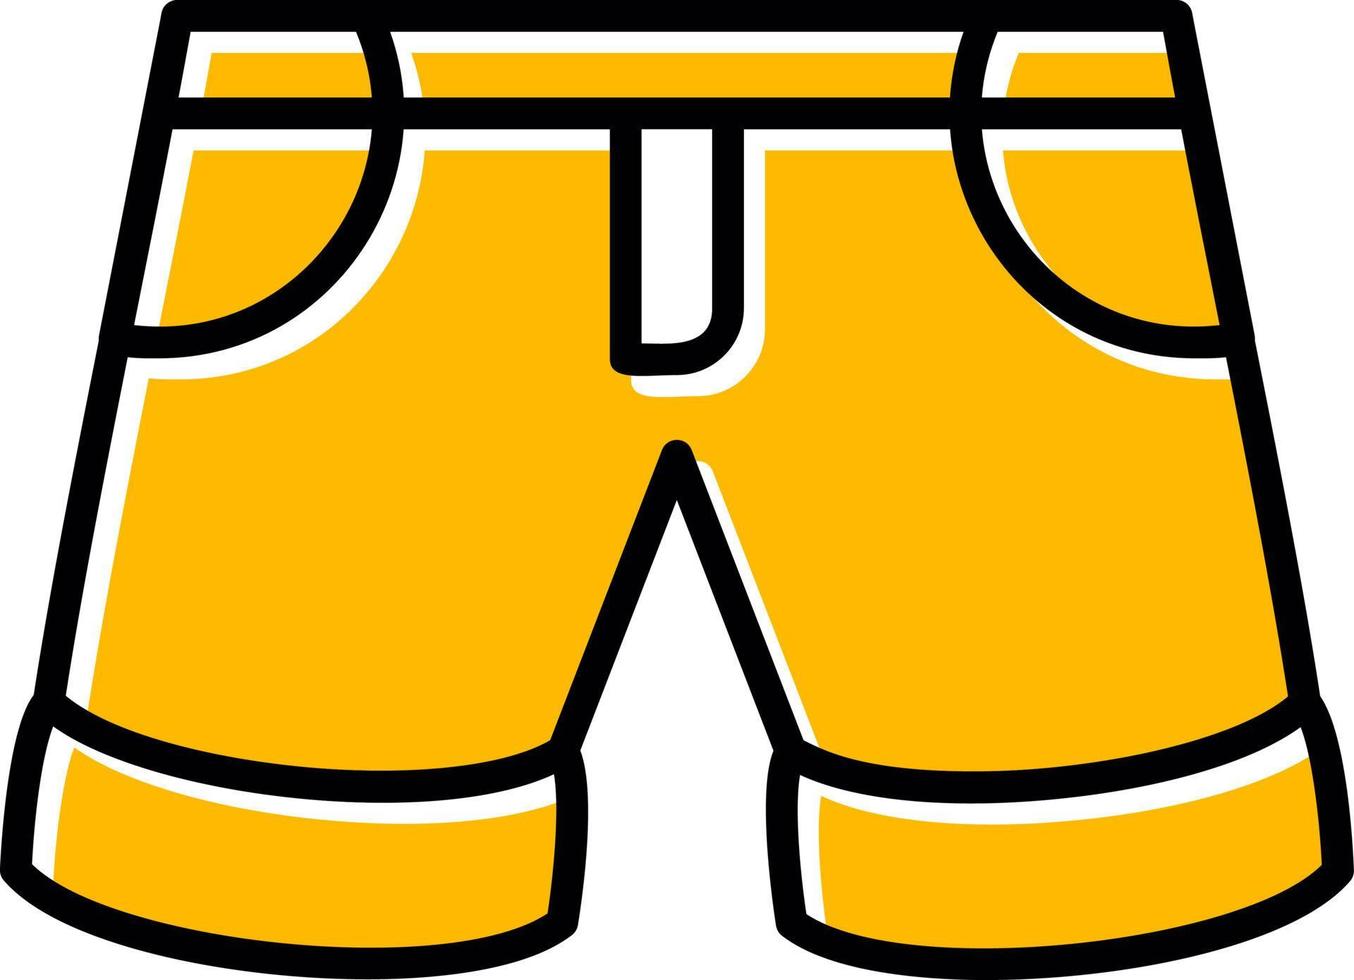 conception d'icônes créatives de shorts vecteur